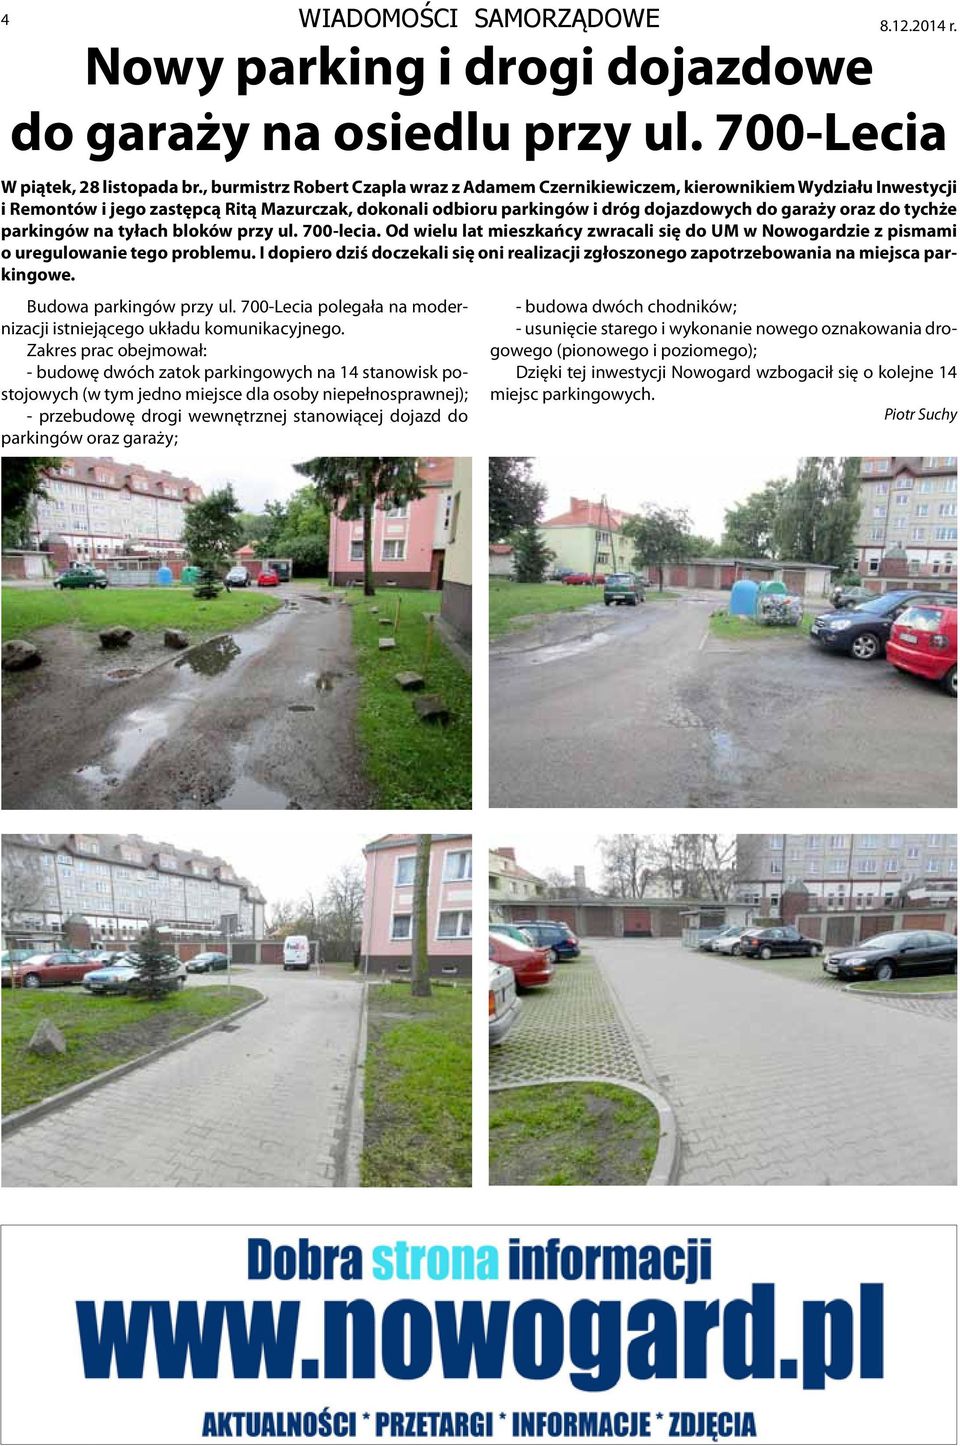 tychże parkingów na tyłach bloków przy ul. 700-lecia. Od wielu lat mieszkańcy zwracali się do UM w Nowogardzie z pismami o uregulowanie tego problemu.